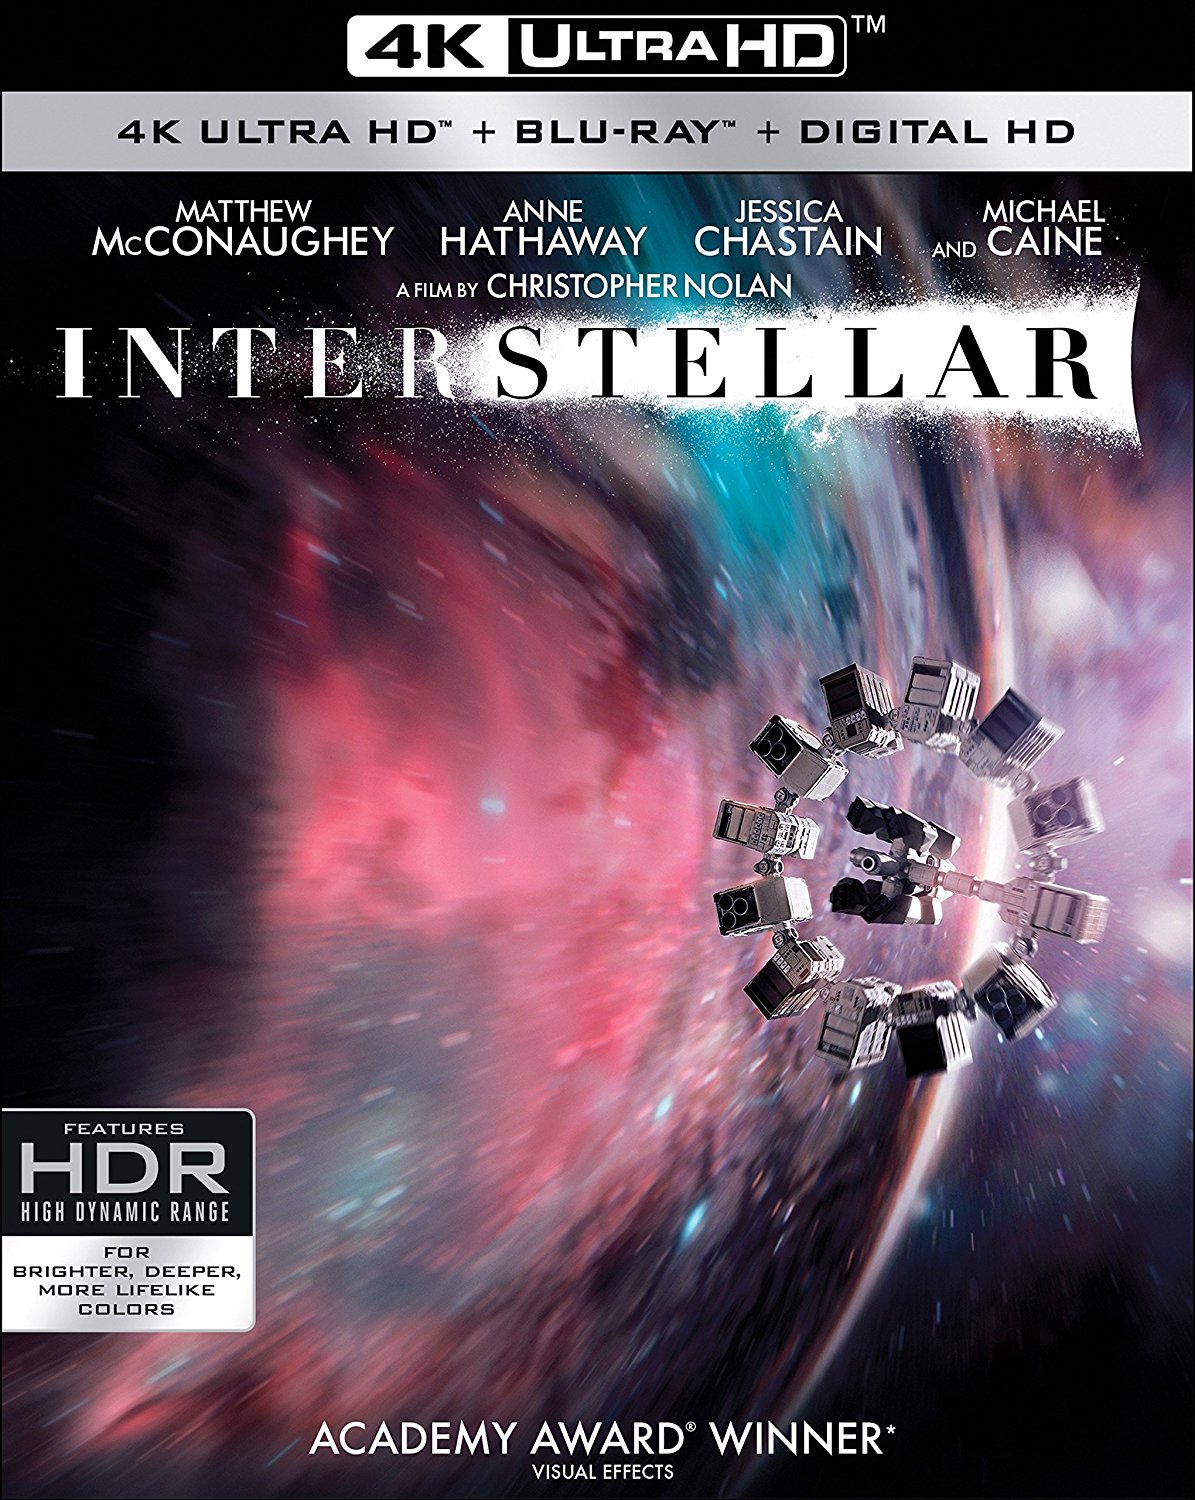 星际穿越 [重混THD次世代国语配音][国语简繁特效/简繁双语特效/简体纯特效字幕]Interstellar 2014 UHD Blu-ray 2160p HEVC DTS-HD MA 5.1-PureUHD@HDSky[74.98GB]